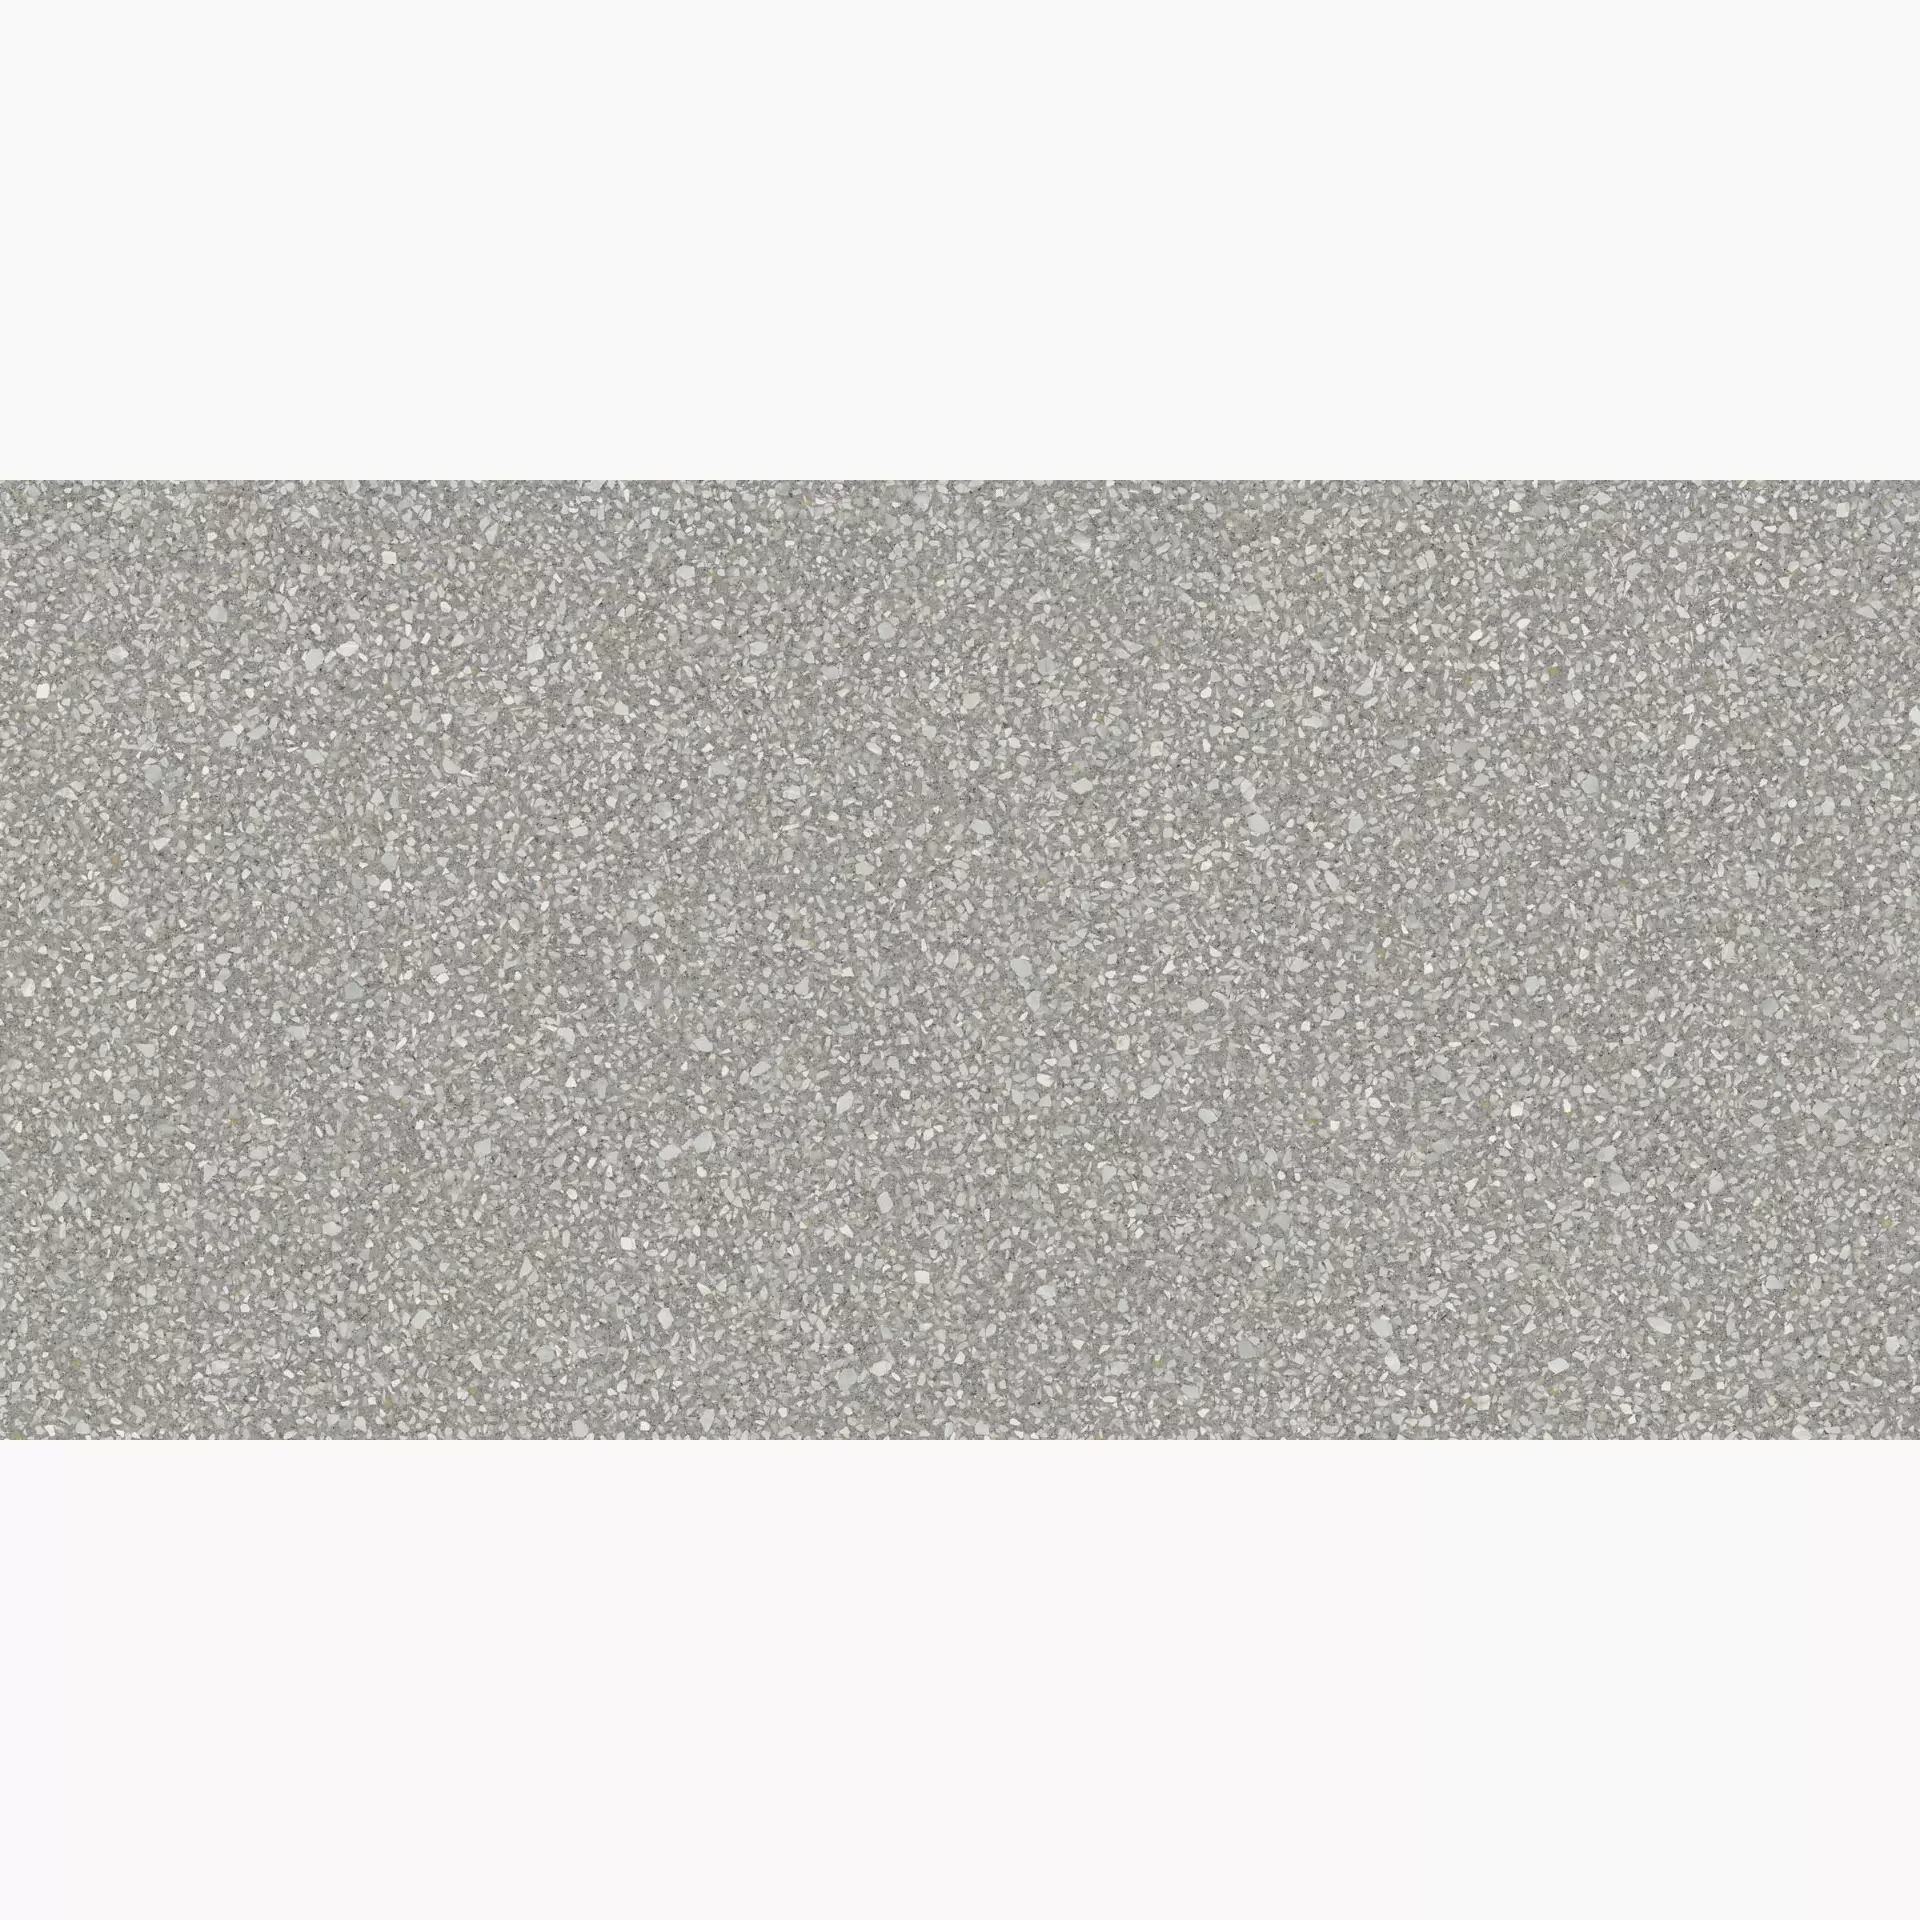 Abk Blend Dots Grey Naturale PF60006702 60x120cm rektifiziert 8,5mm